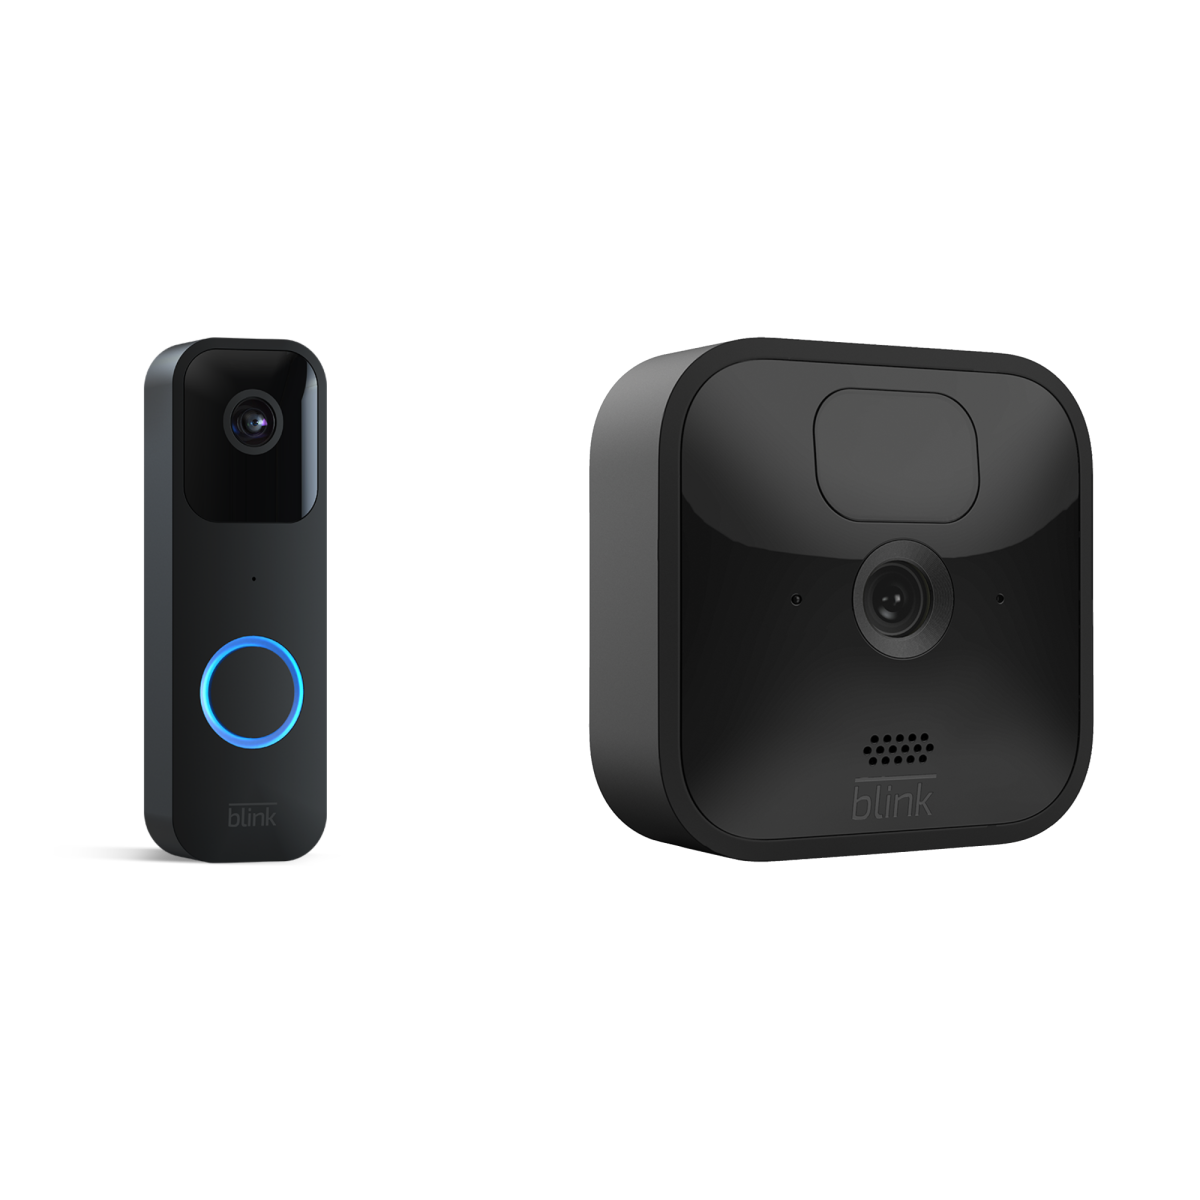 Blink Outdoor 1-Kamera-System + Blink Video Doorbell - Bundle bestehend aus Blink Outdoor Kamera (EInzelpack) und Blink Video Doorbell von Amazon